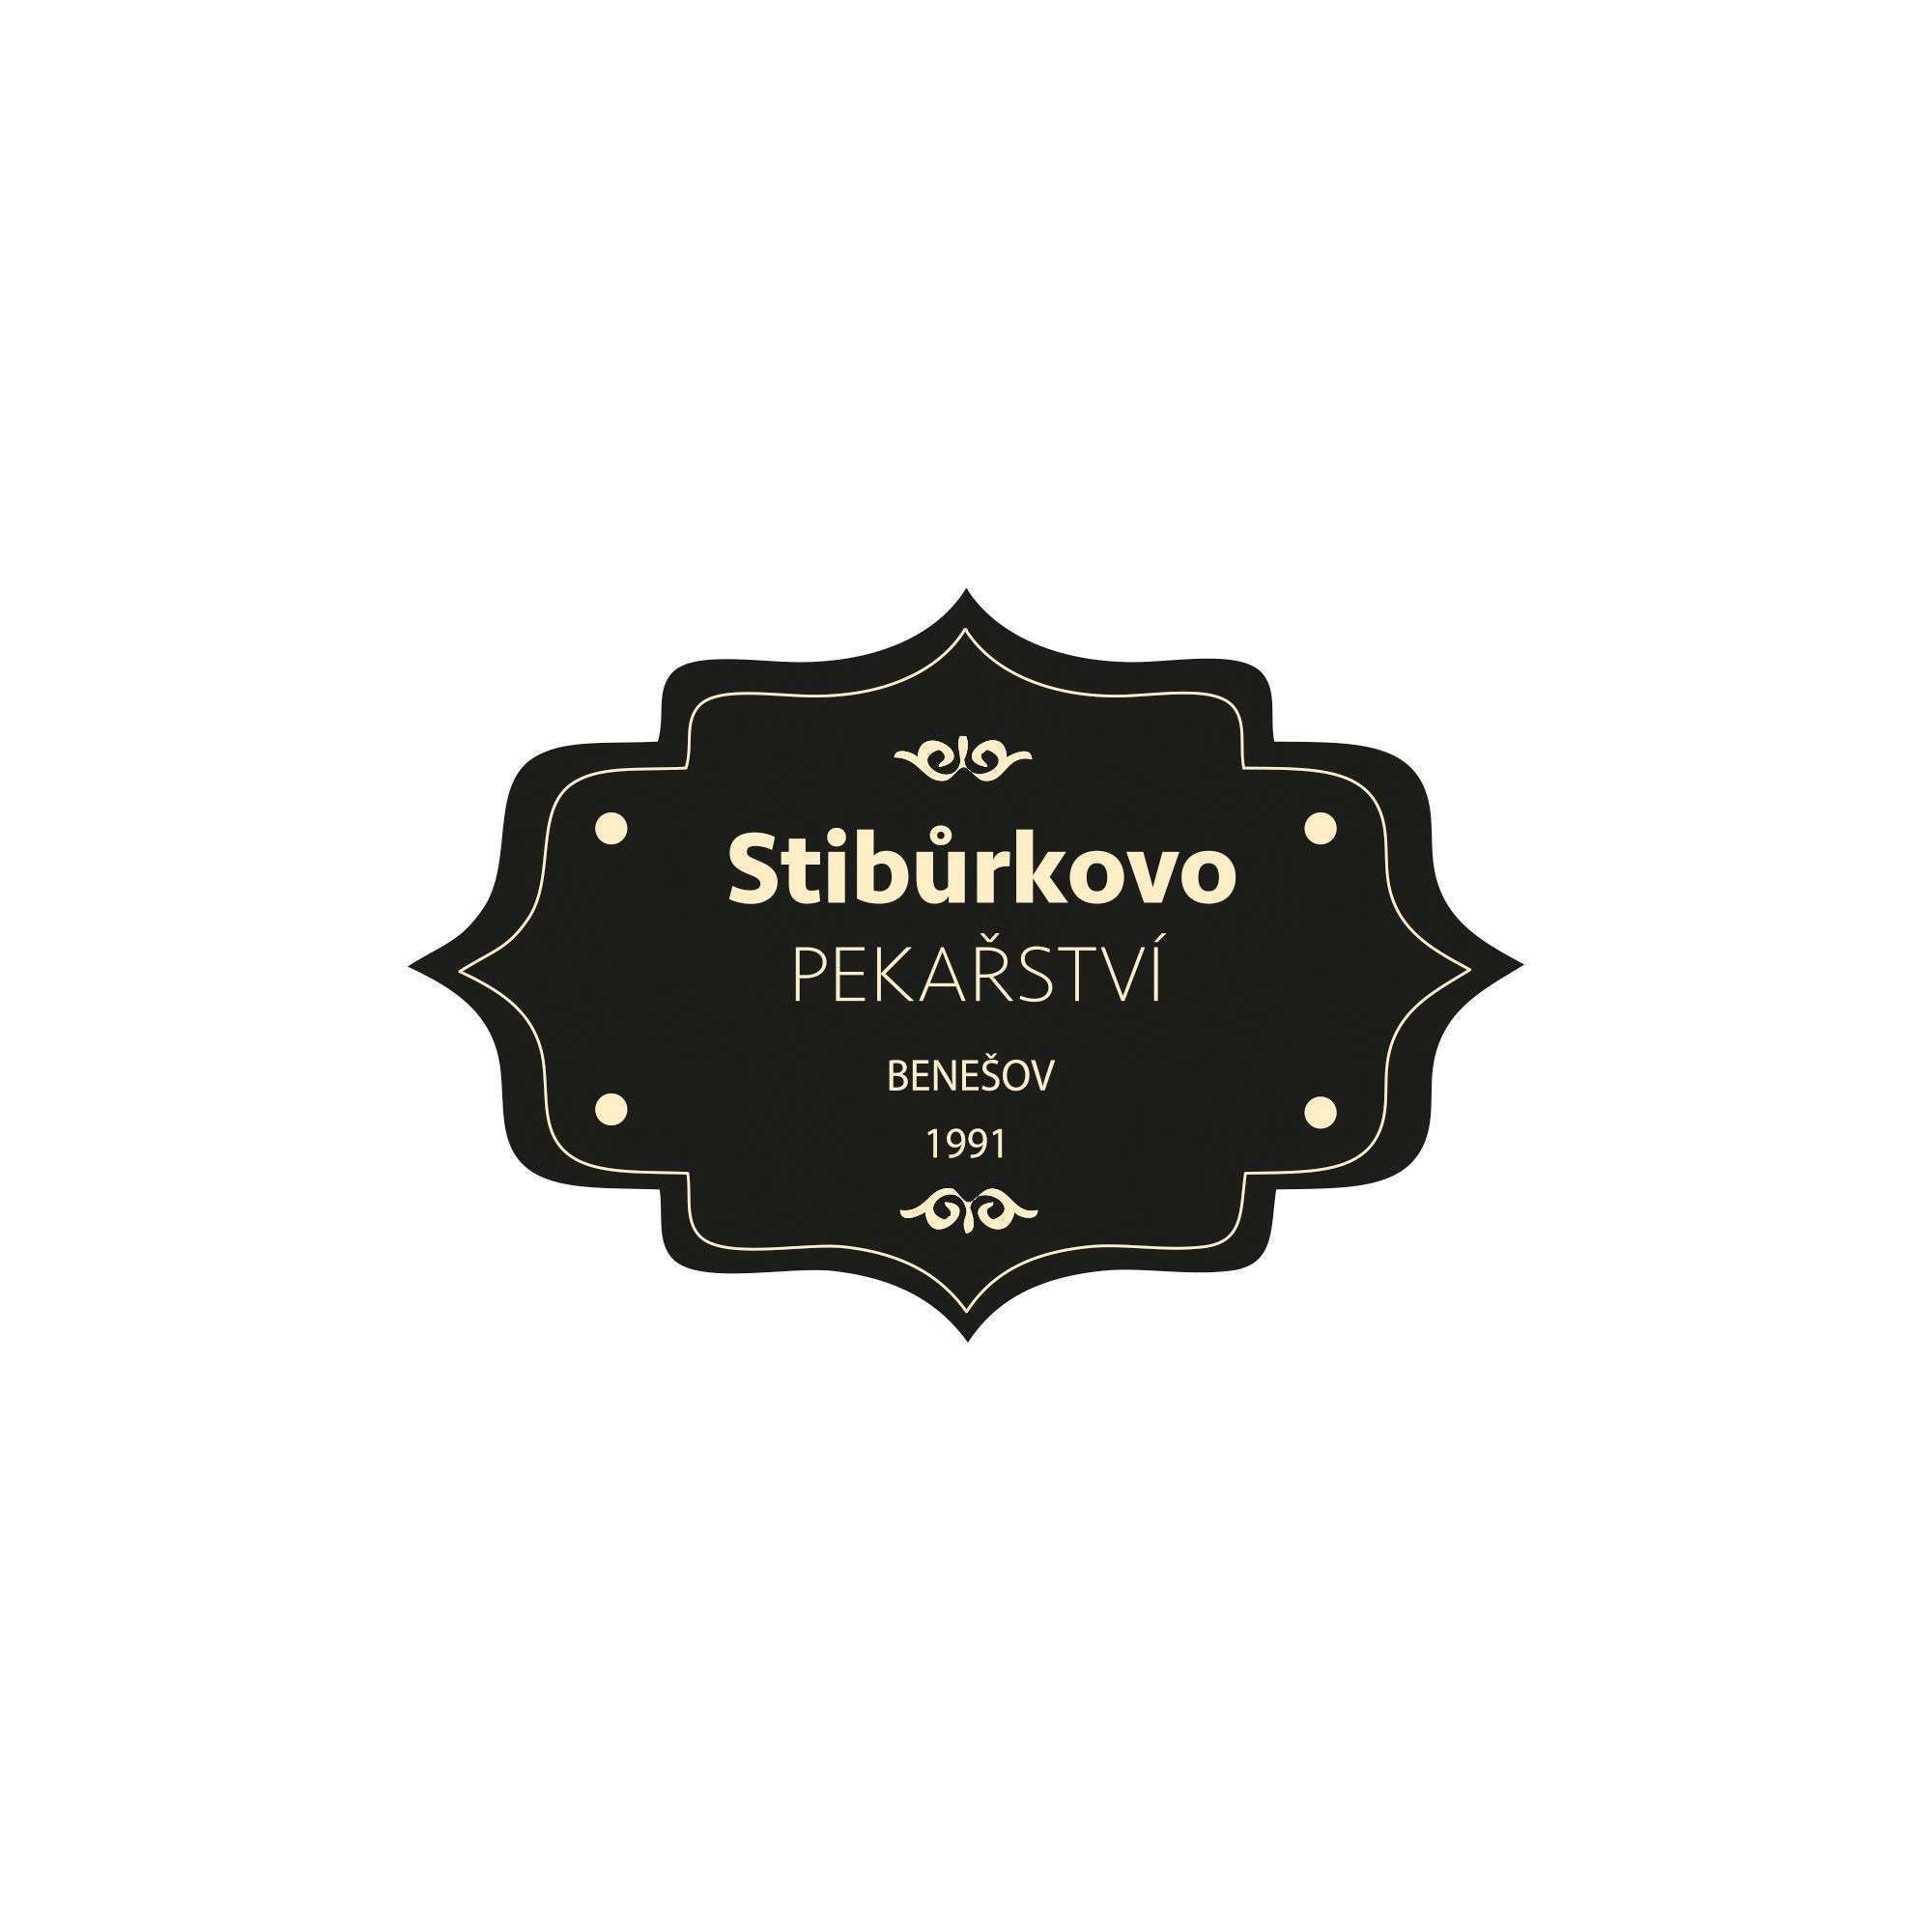 Universal label design + logo Stibůrkovo Pekařství